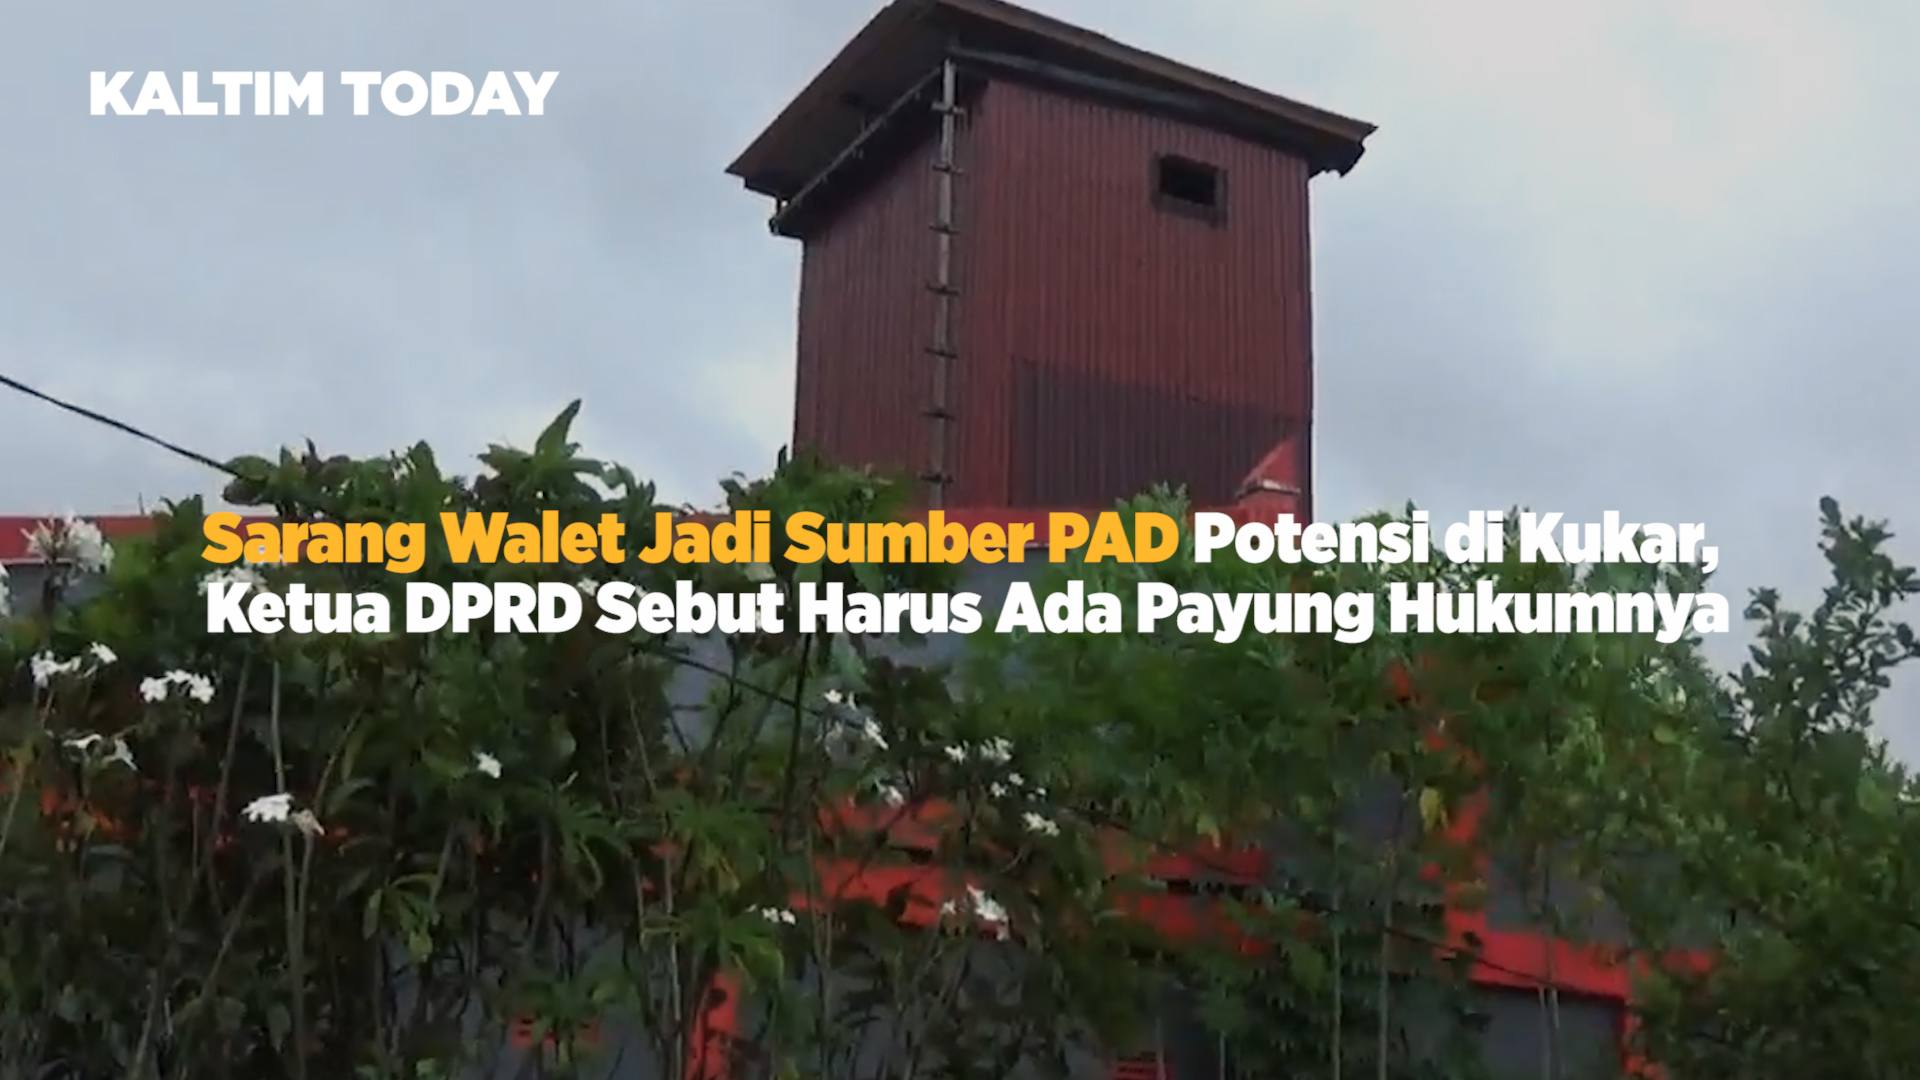 Kejar Potensi Sarang Walet, Ketua DPRD Abdul Rasid Bakal Susun Perda